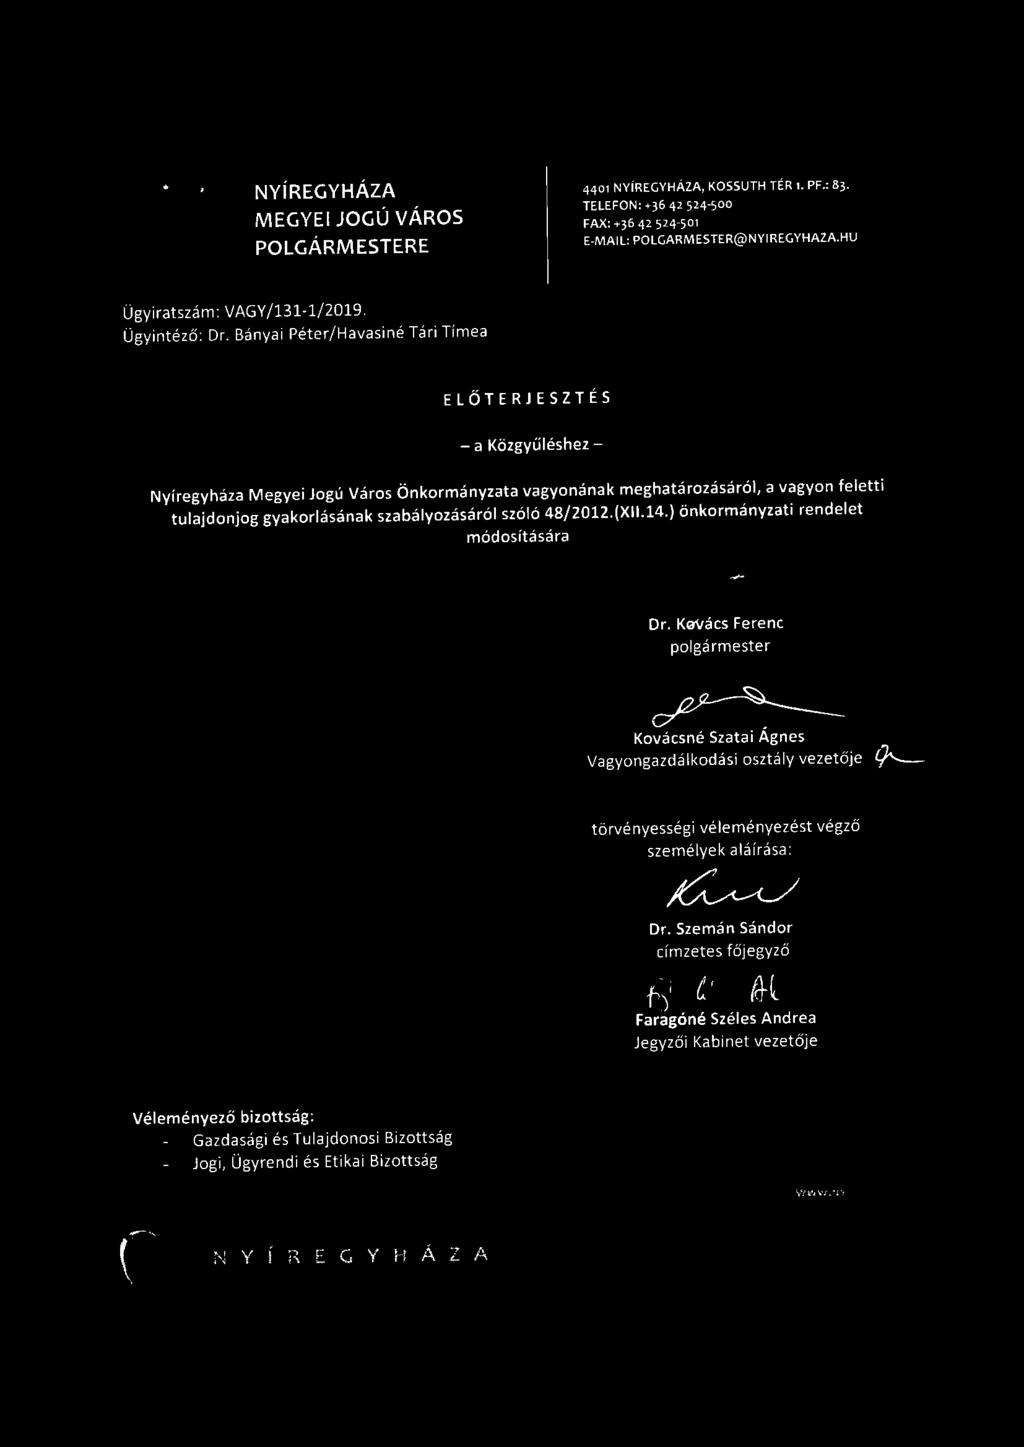 ) önkormányzati rendelet módosítására Dr.K~enc polgármester 1-. c/2-~ Kovácsné Szatai Ágnes Vagyongazdálkodási oszt ály vezetője 9'-- törvényességi véleményezést végző személyek aláírása: Dr.